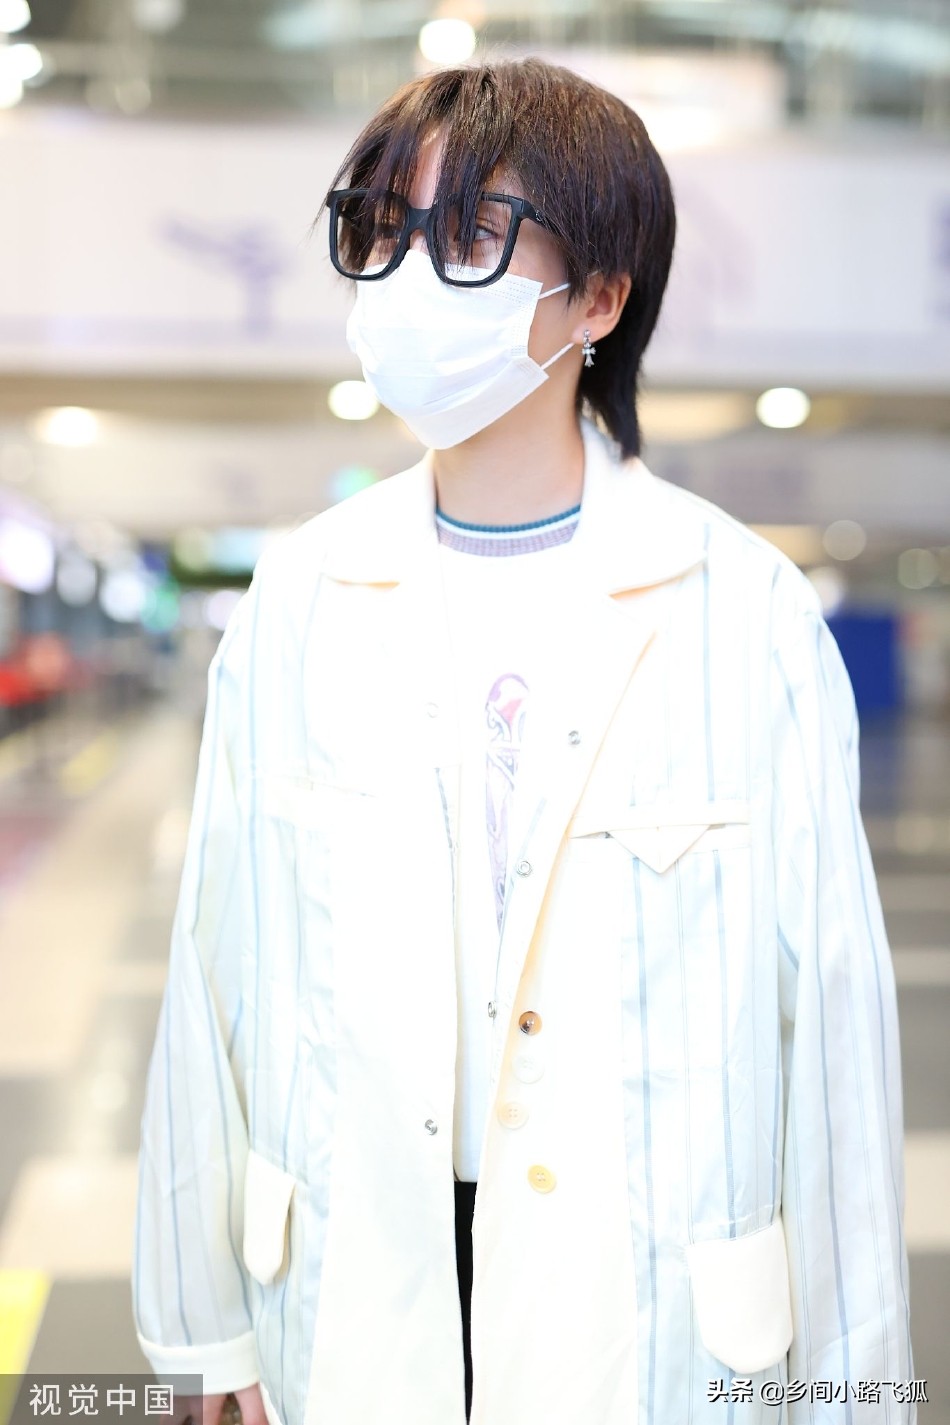 林凡刘海遮面现身机场 穿宽大外套戴框架眼镜显低调